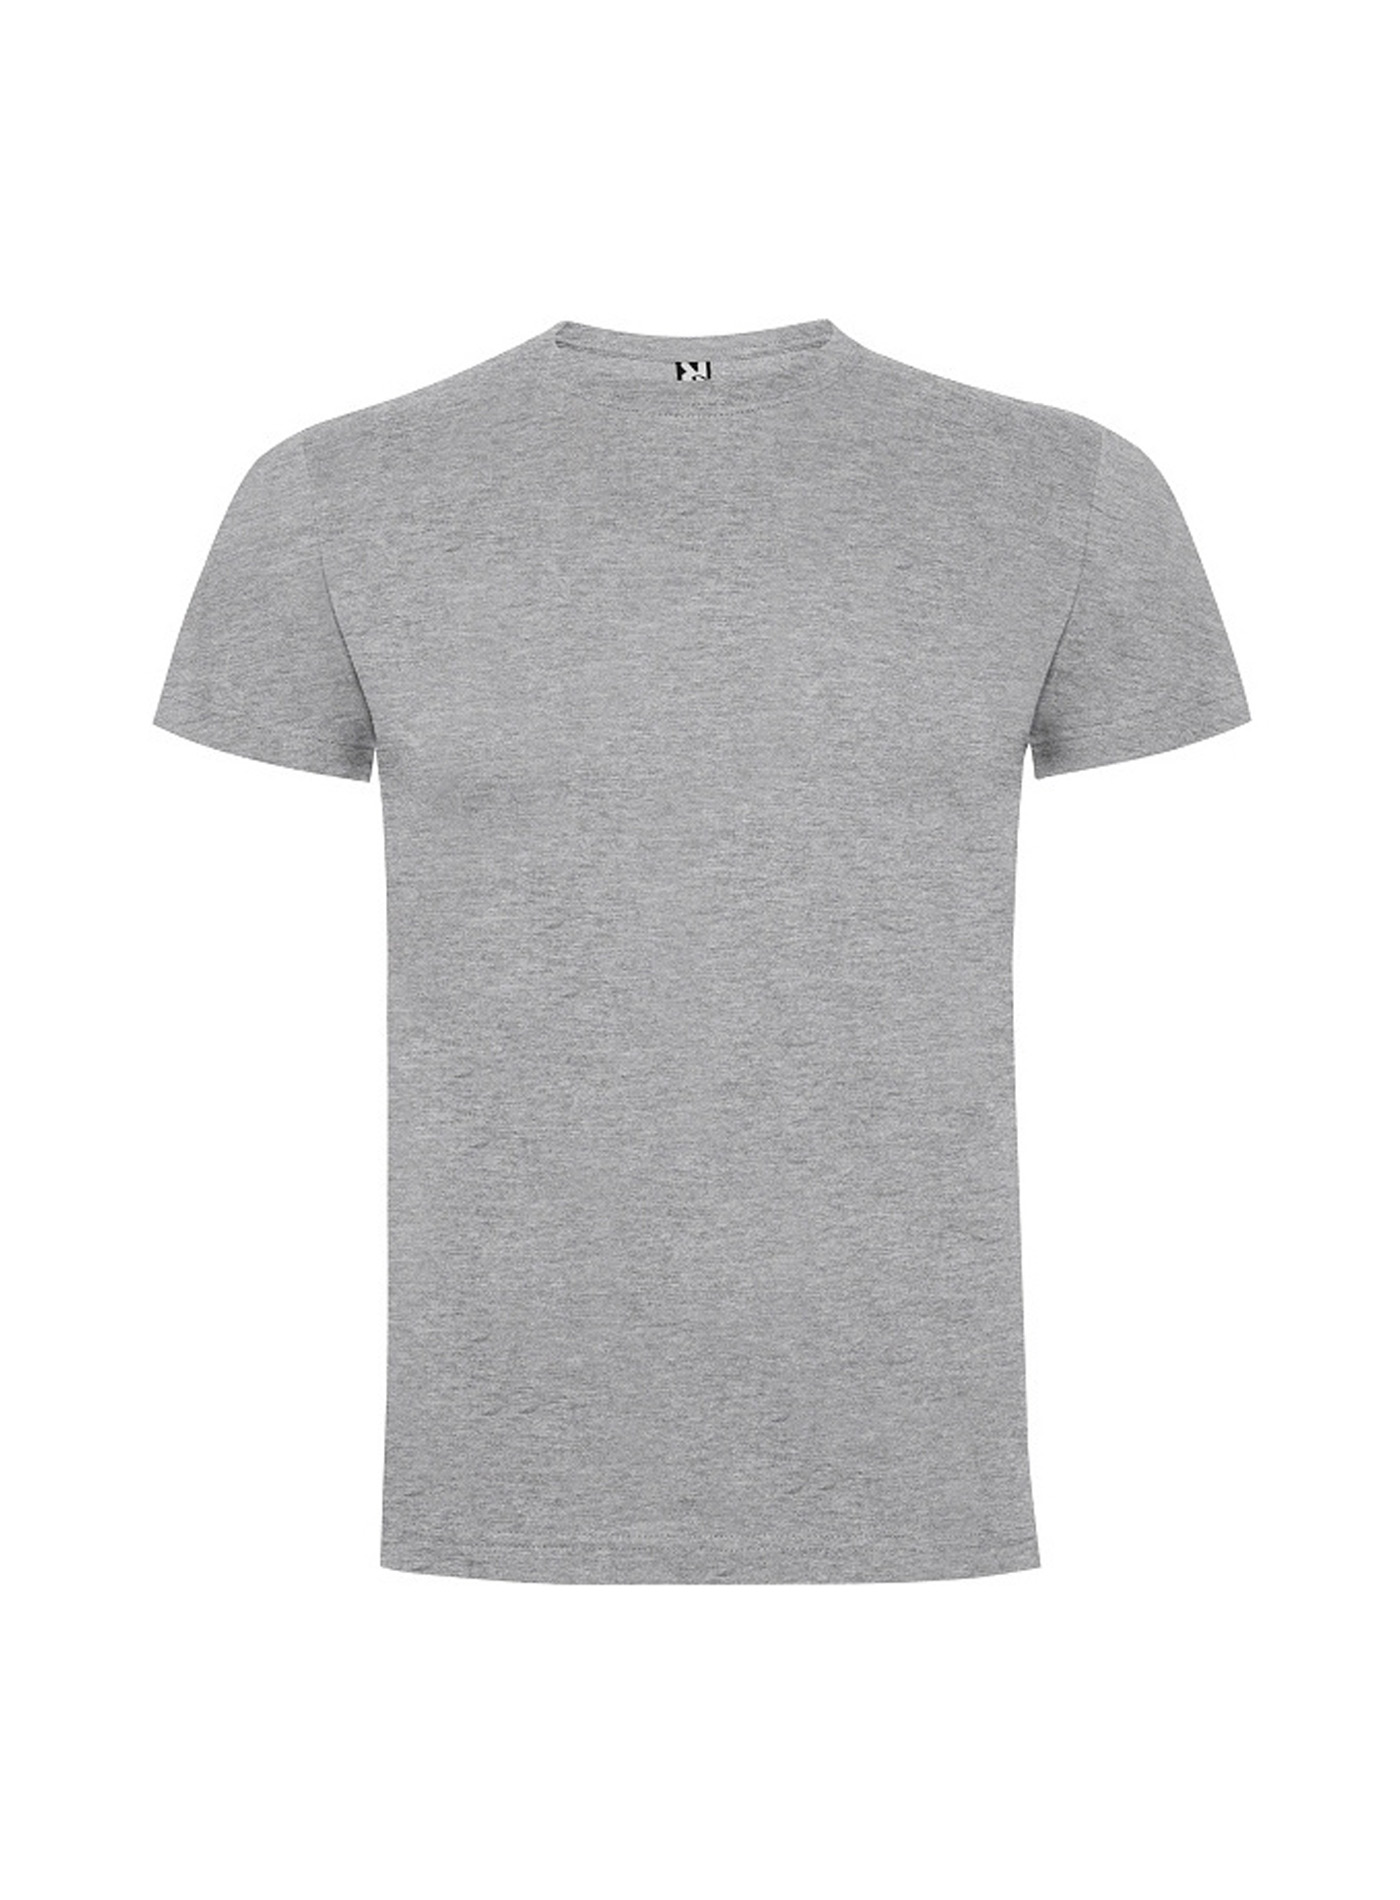 Dětské tričko Roly Dogo premium - Světle šedý melír 5-6